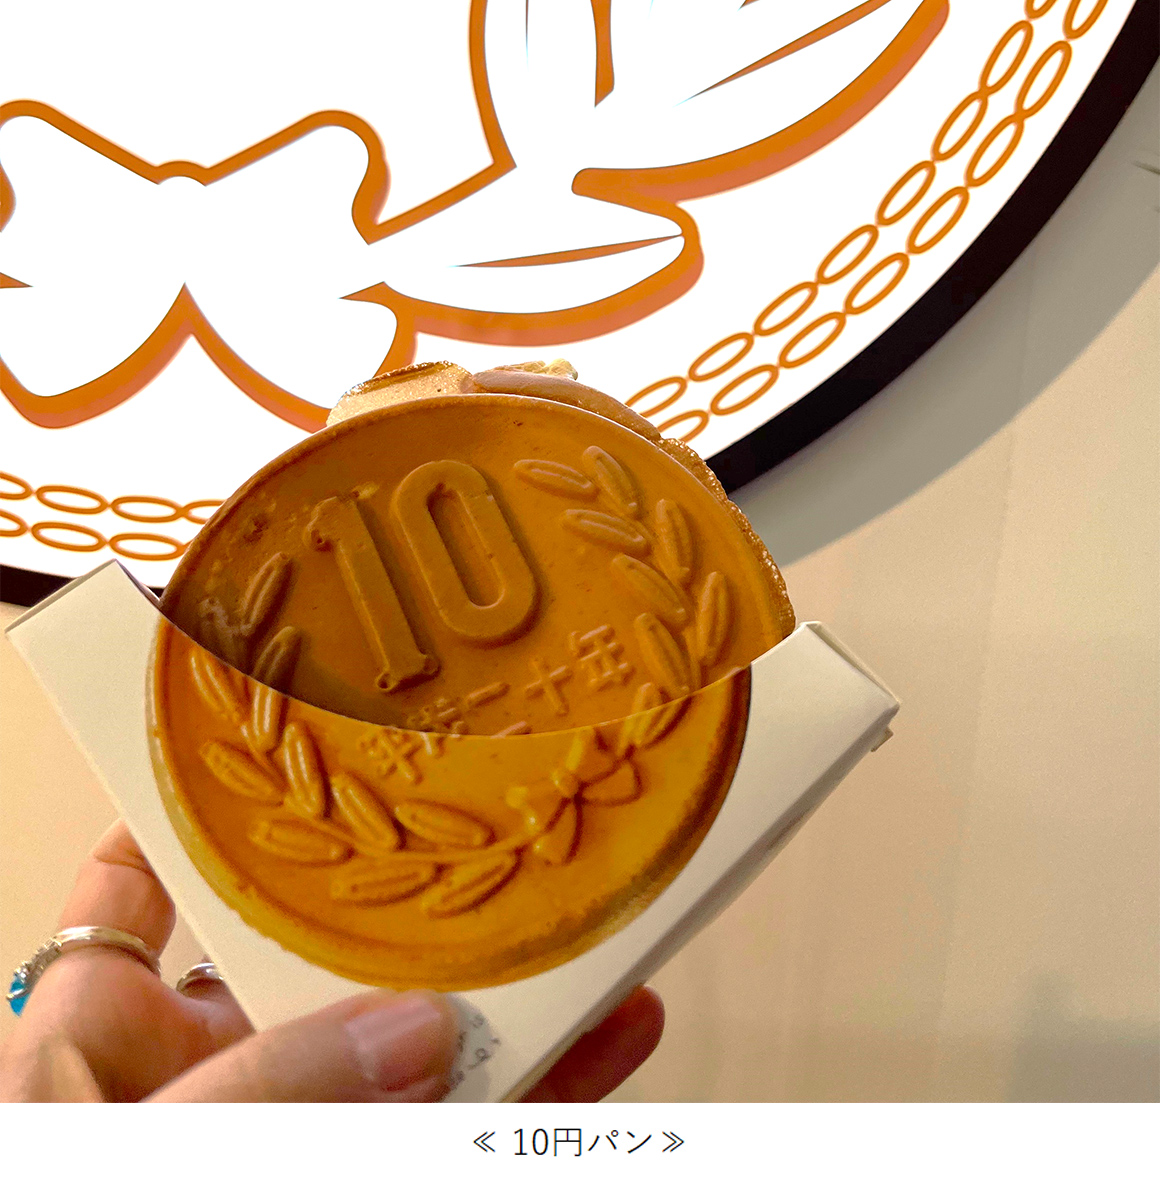 10円パン画像